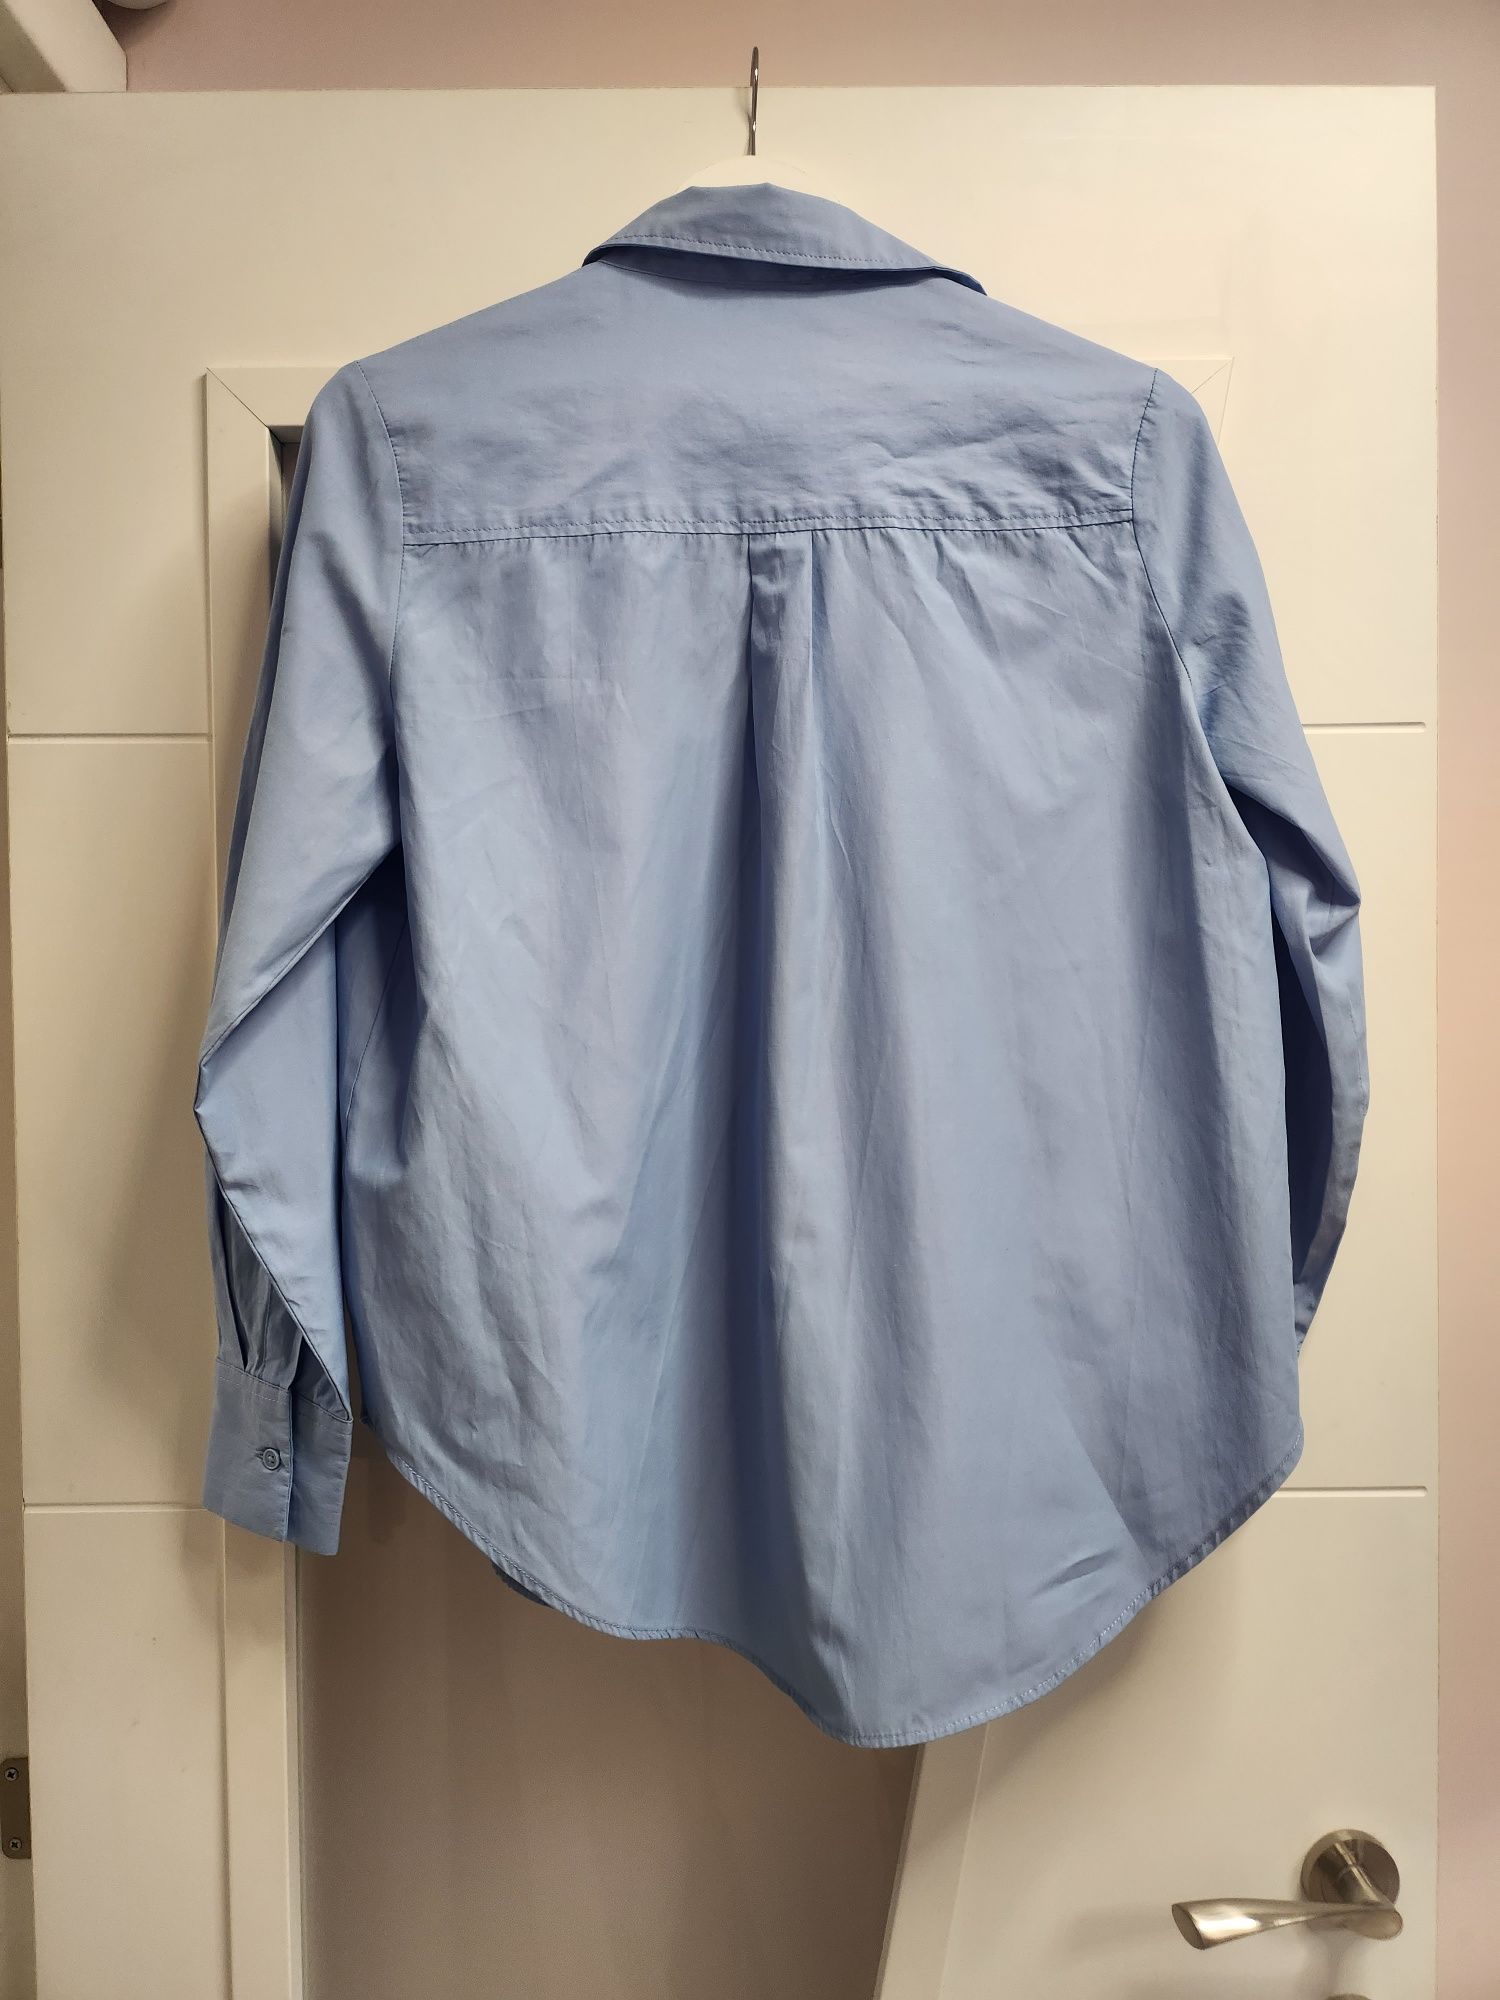 Дамска риза, Calliope, размер S - (синя, зелена)